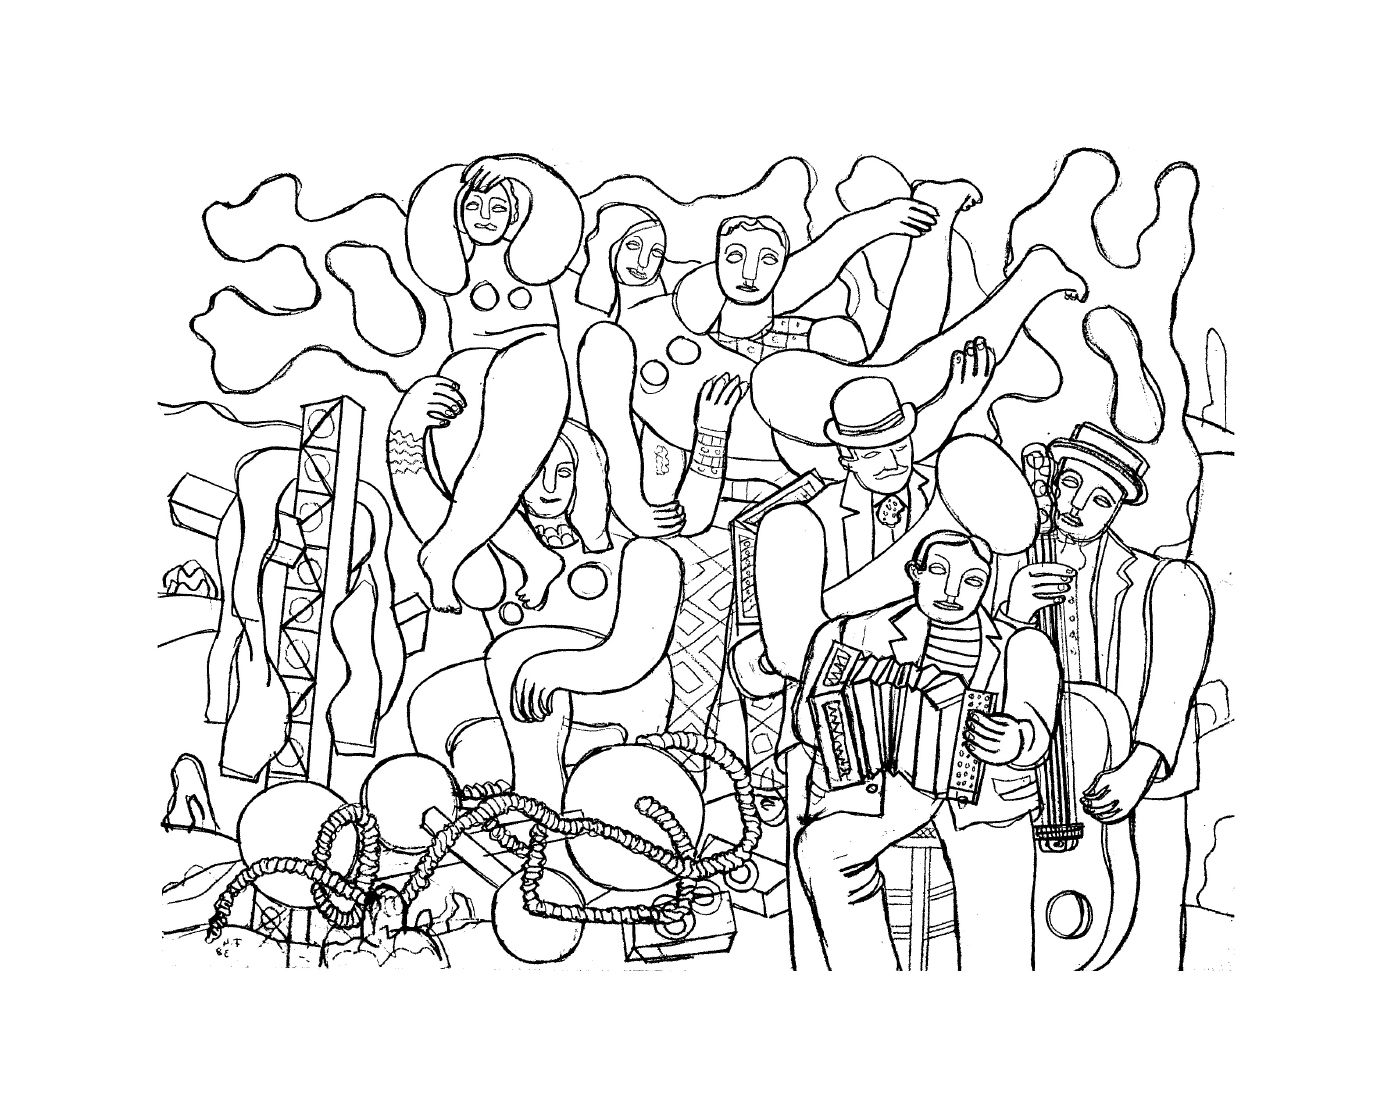   un groupe de personnes selon Fernand Léger en acrobates et musiciens 